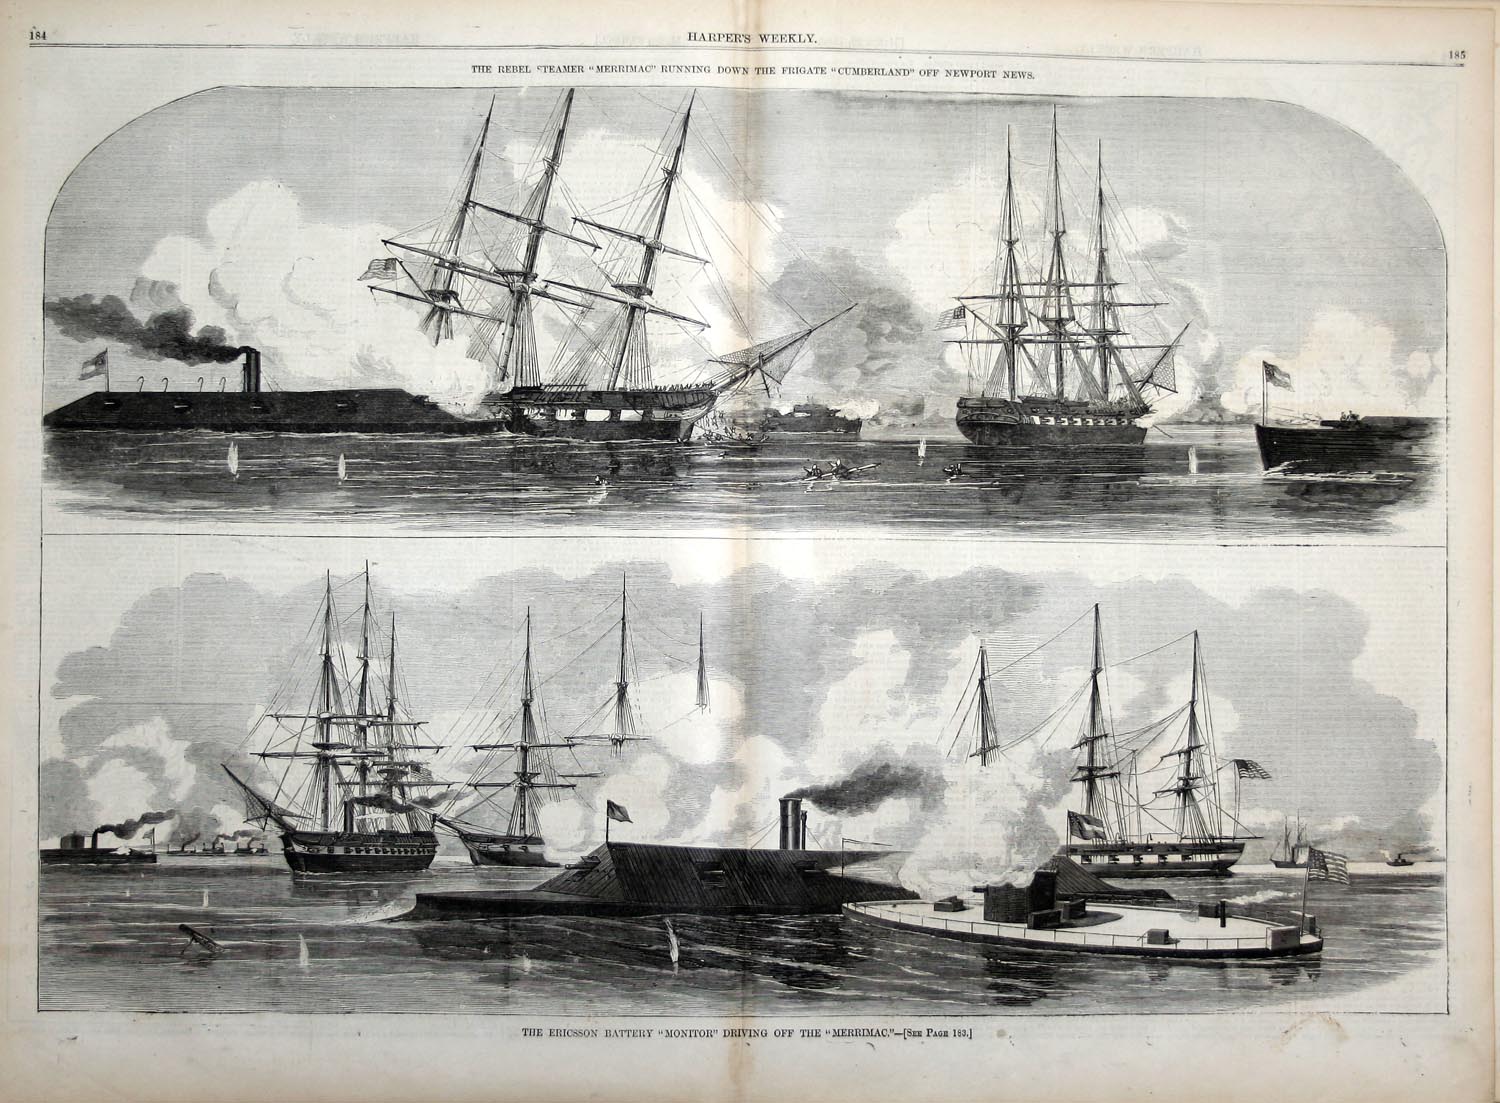 A Harper's Weekly rajza, felül a Cumberland megcsáklyázása, lent a két páncélos harca